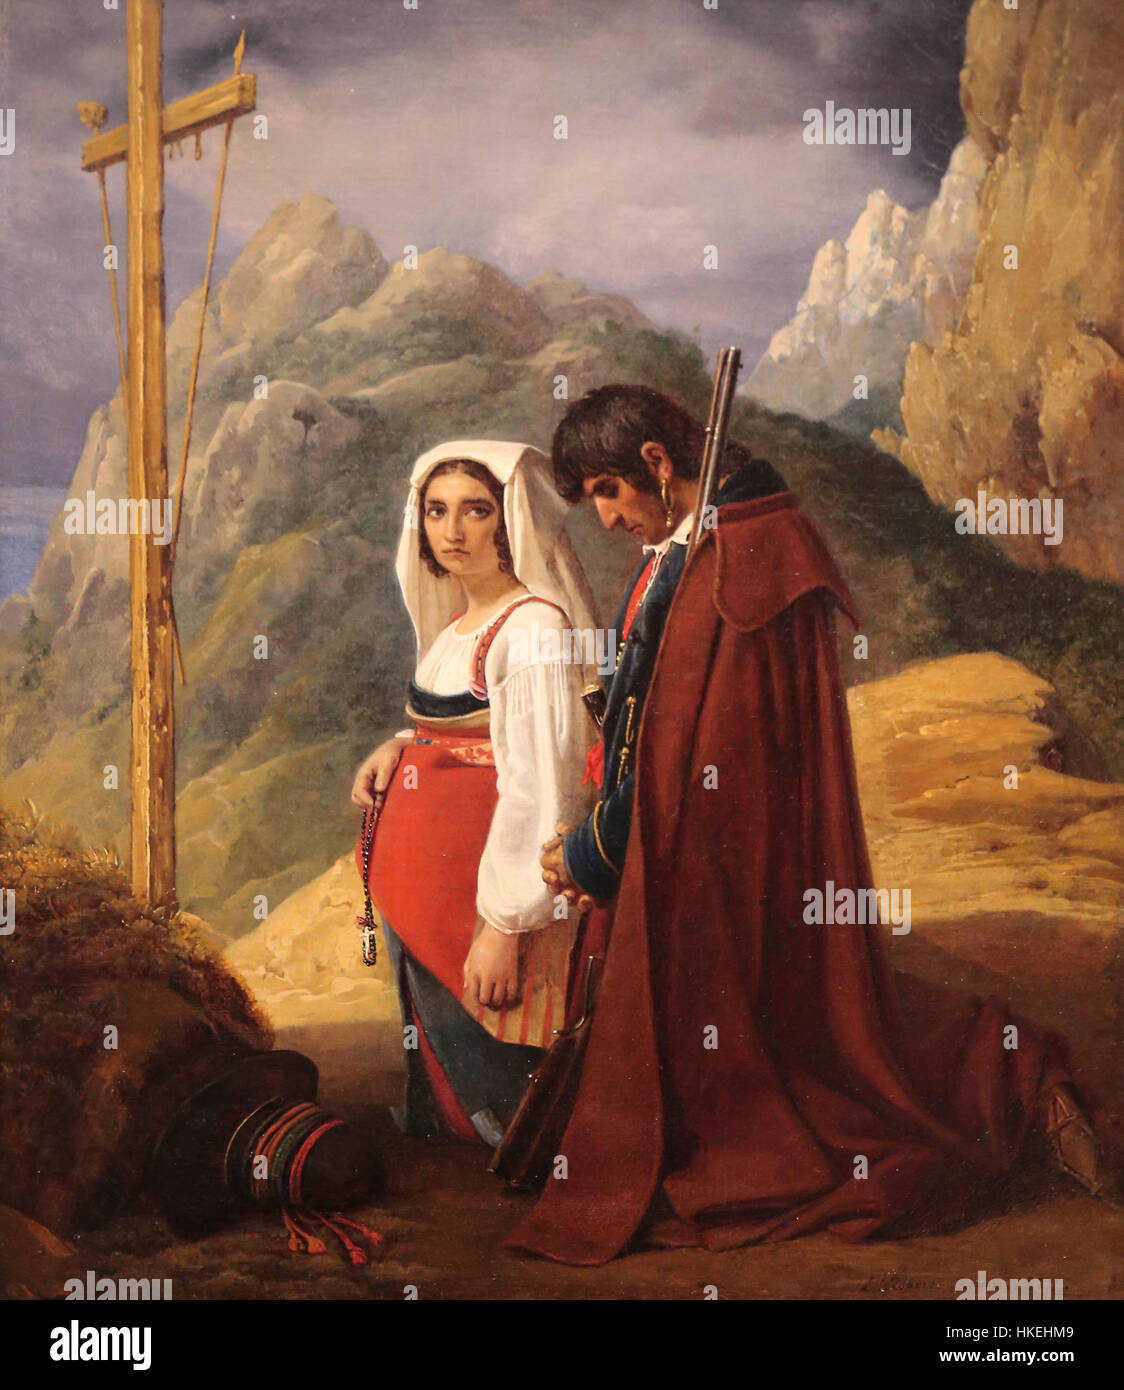 Brigand et sa femme dans la prière, 1824. Huile sur toile, de Léopold Robert (1794-1835). Metropolitan Museum of Art de New York. Usa. Banque D'Images